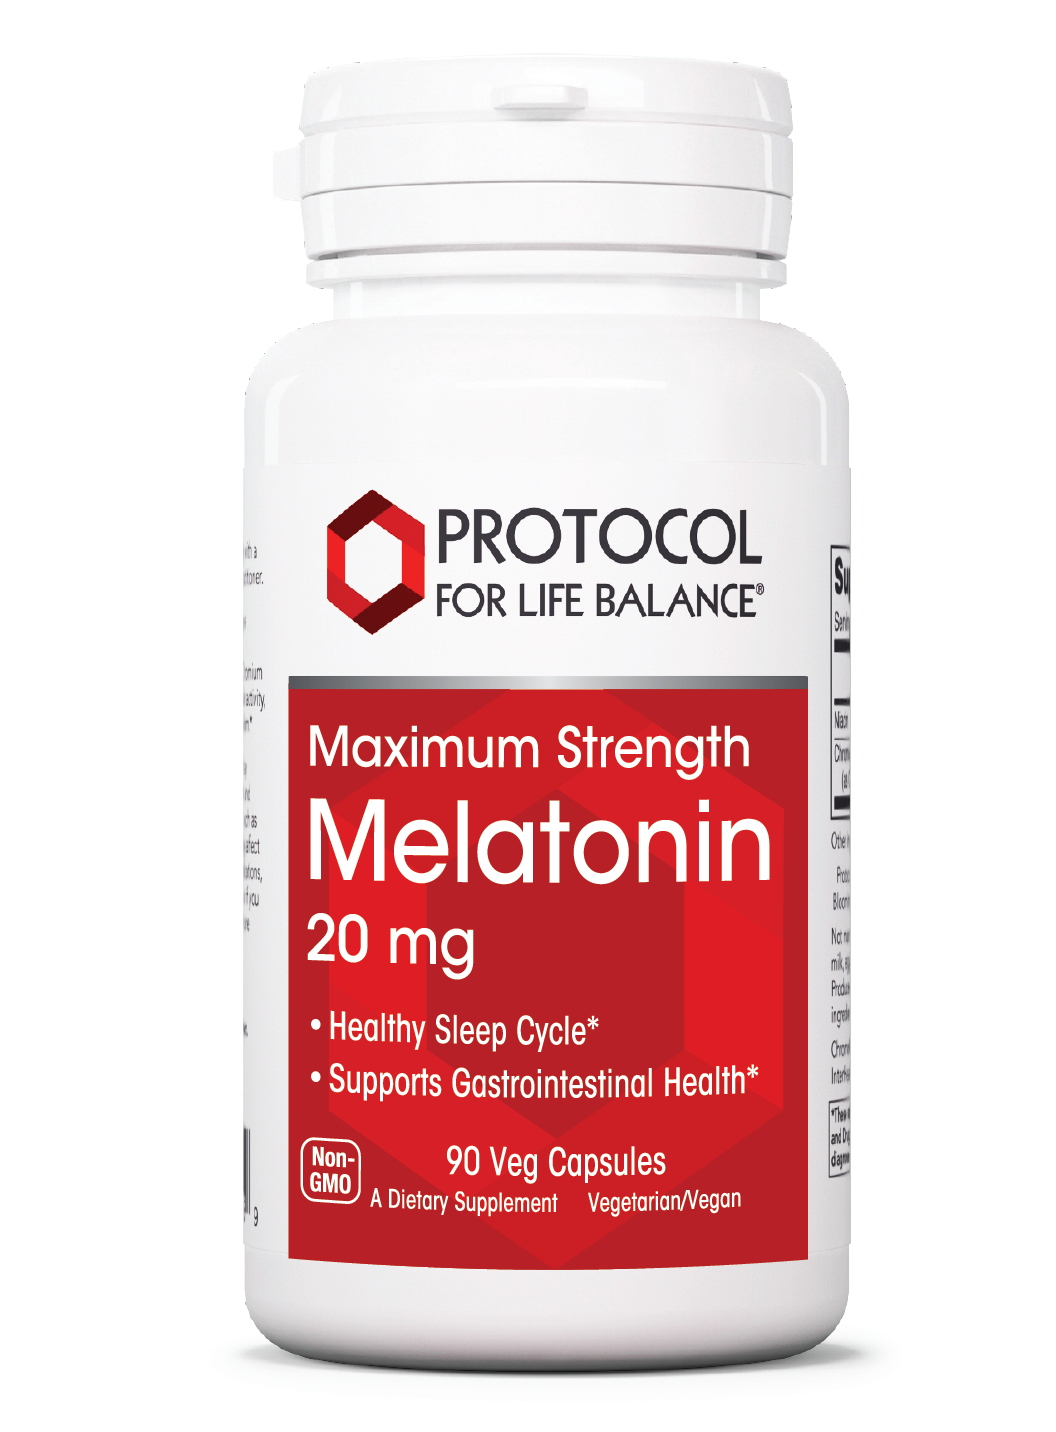 Melatonin 20 mg Maximum Strength 20 mg